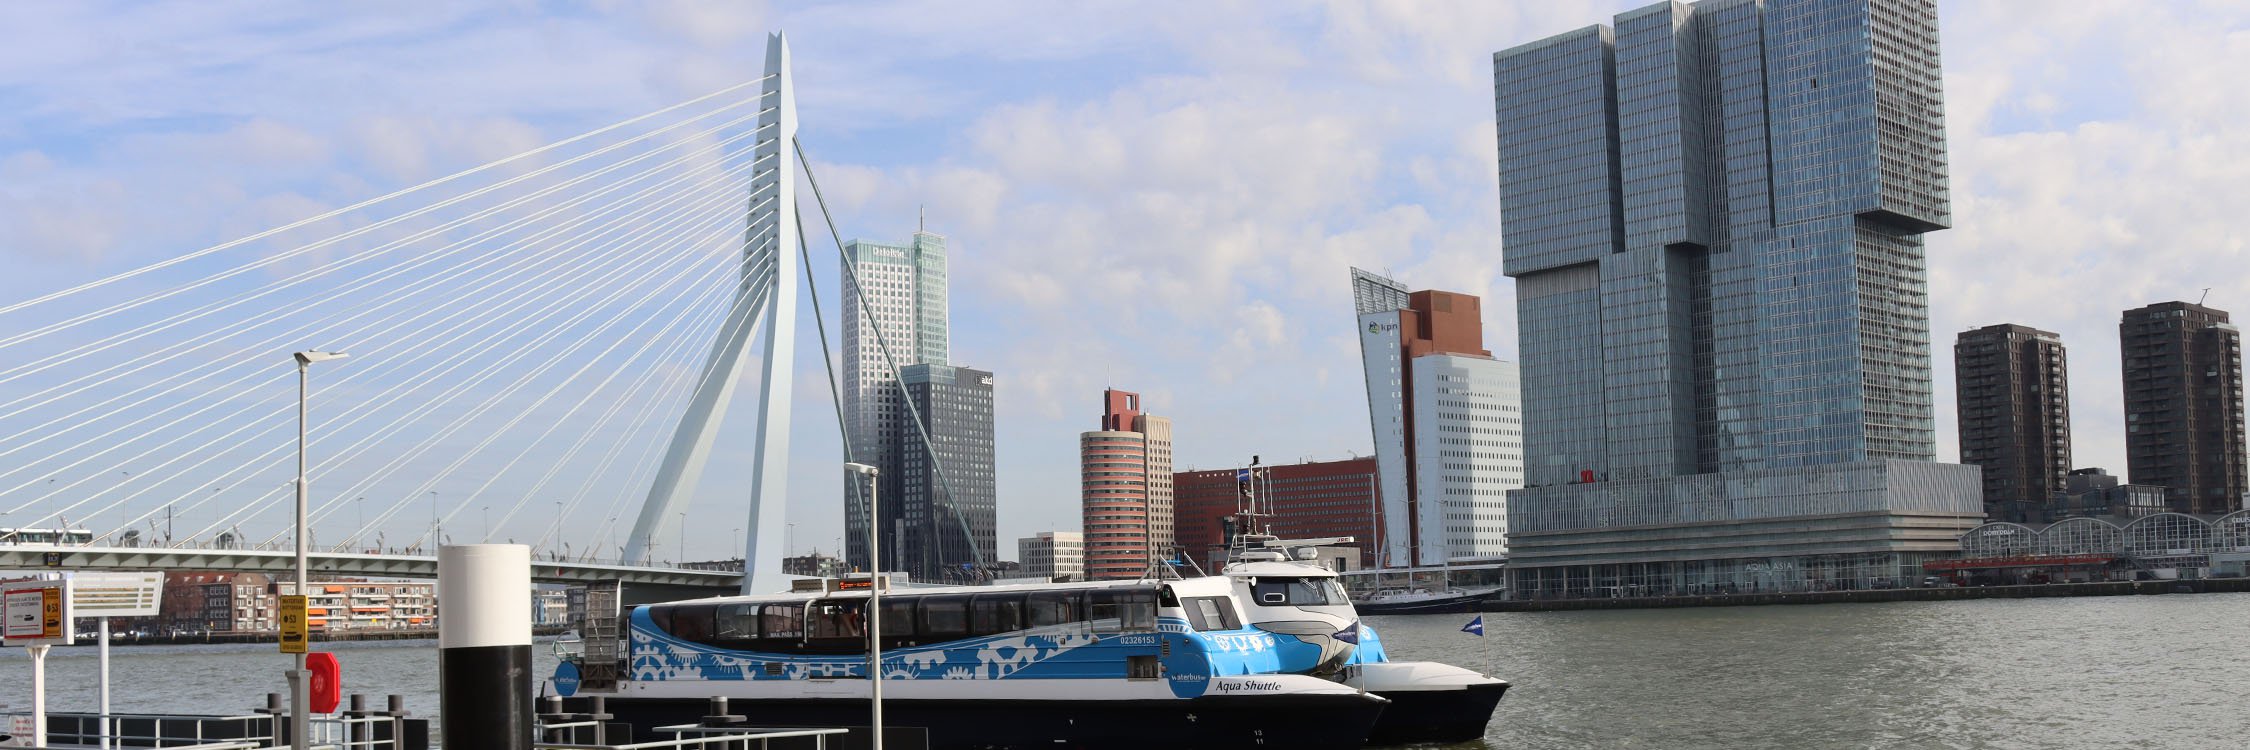 Rotterdam regio Tours 1.jpg